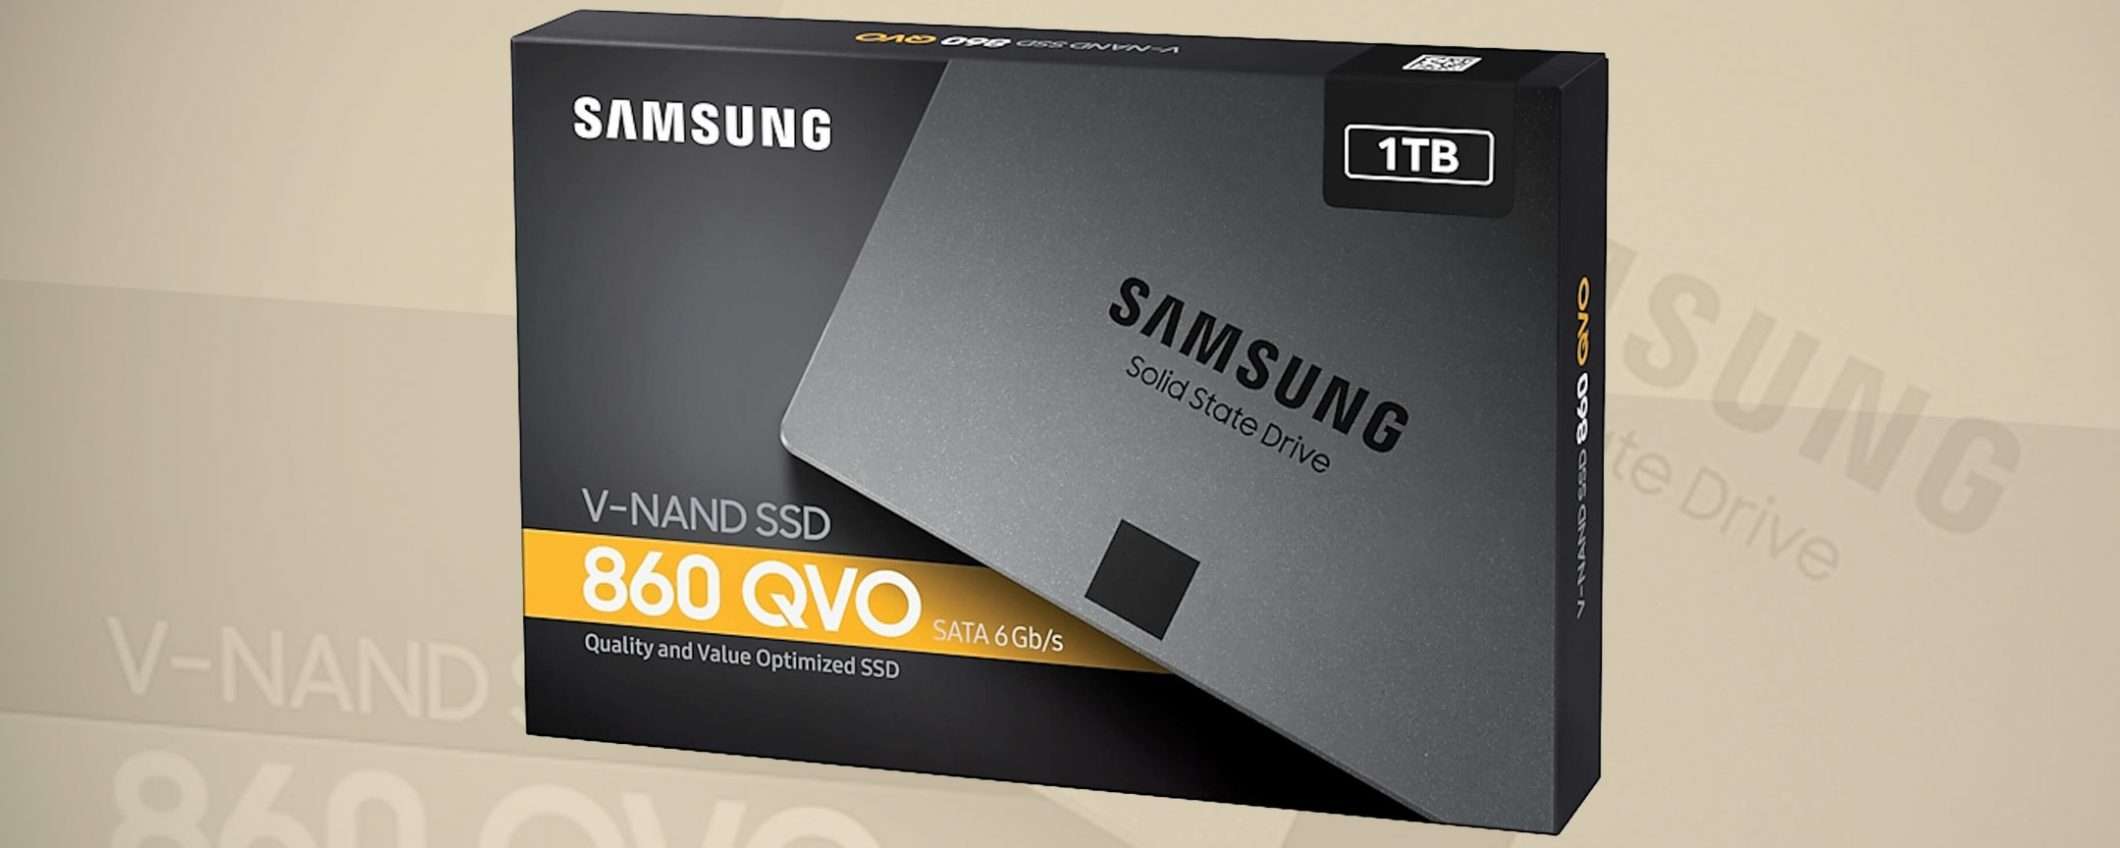 La SSD di Samsung 860 QVO da 1 TB a 99,90 euro